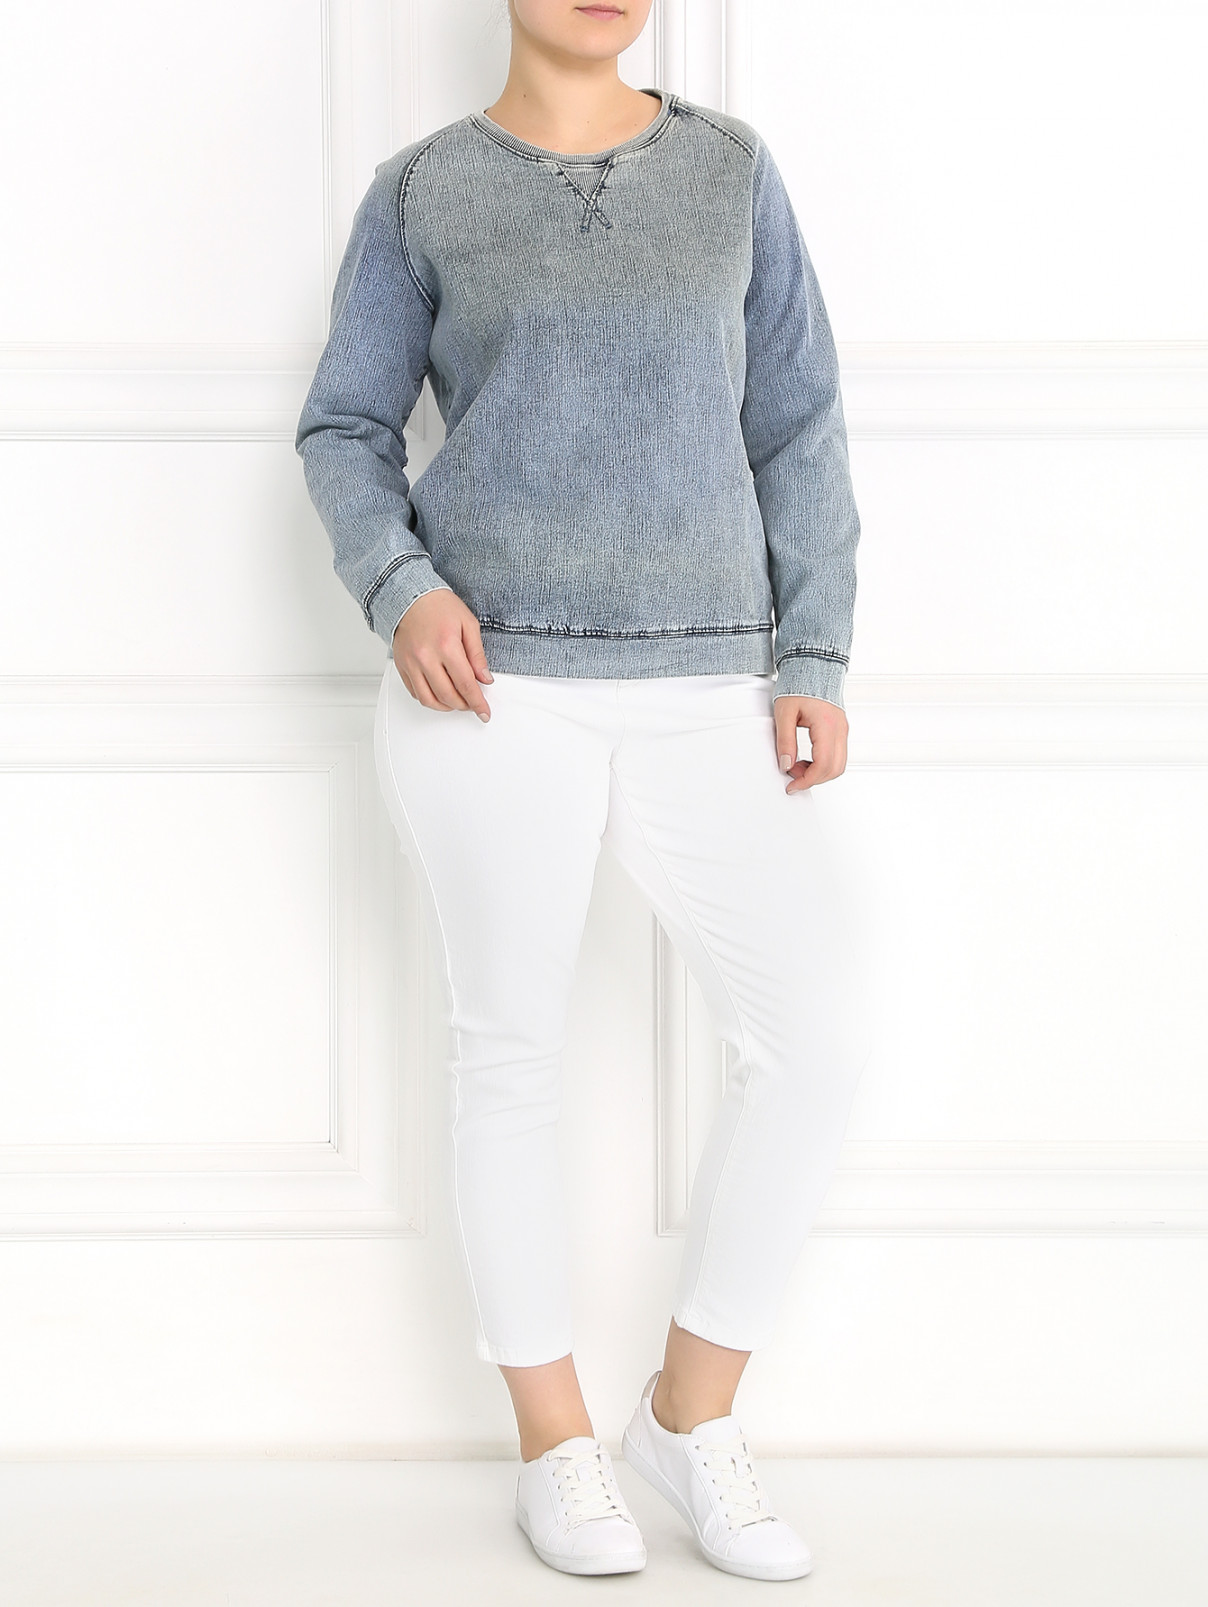 Узкие джинсы с заниженной посадкой Marina Sport  –  Модель Общий вид  – Цвет:  Белый